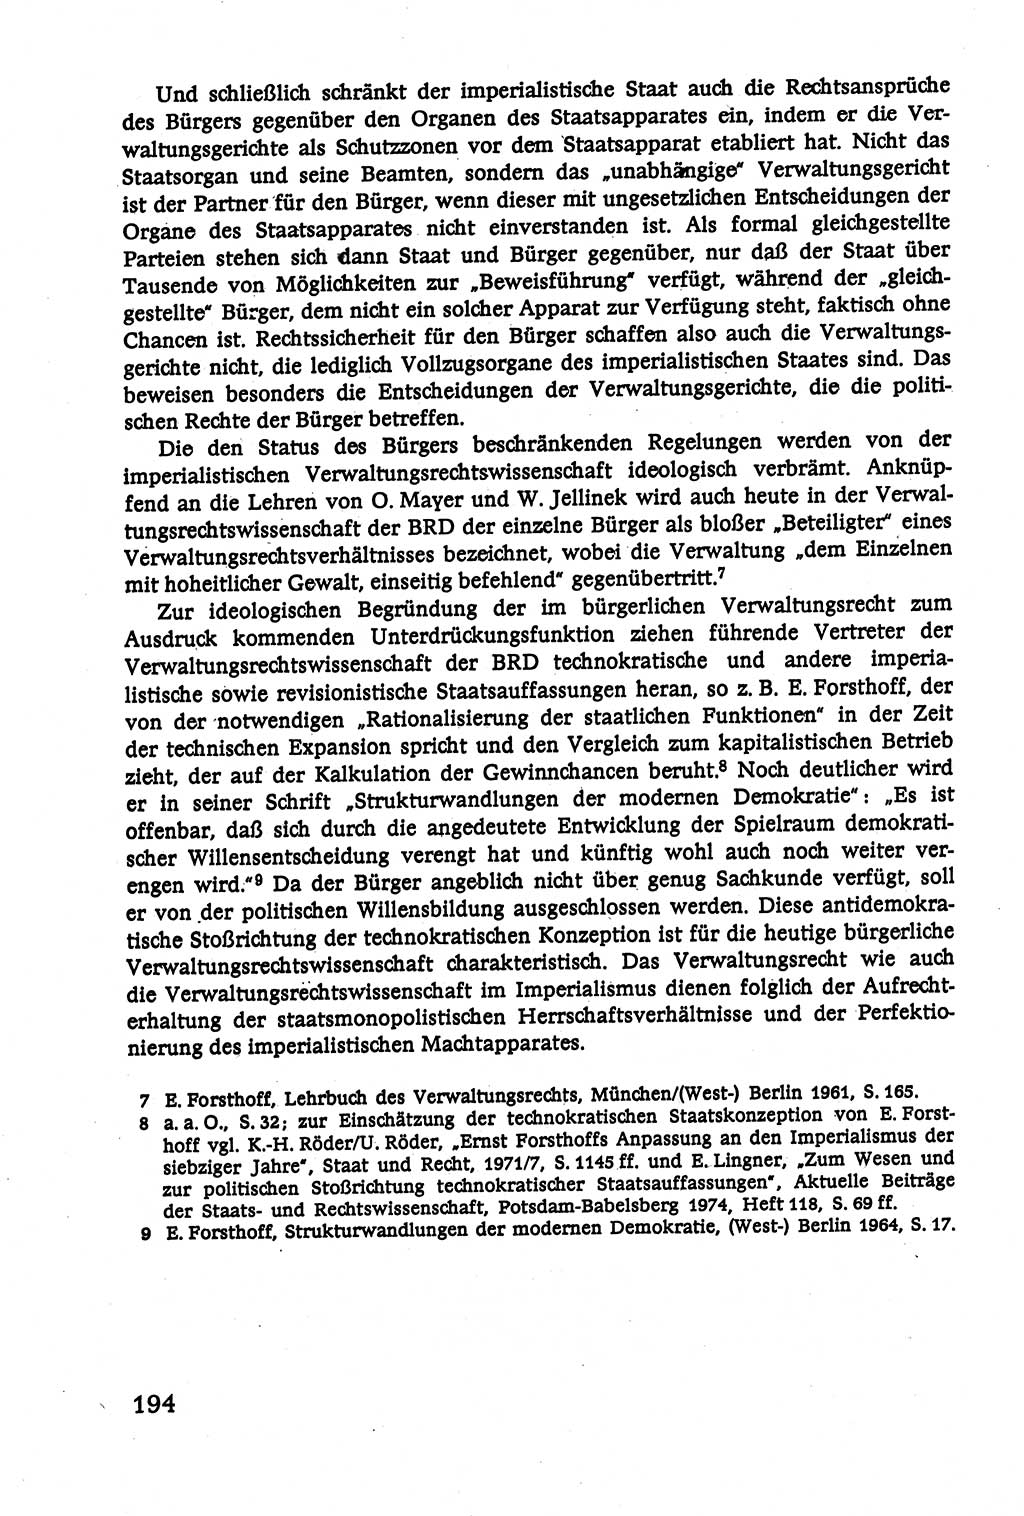 Verwaltungsrecht [Deutsche Demokratische Republik (DDR)], Lehrbuch 1979, Seite 194 (Verw.-R. DDR Lb. 1979, S. 194)